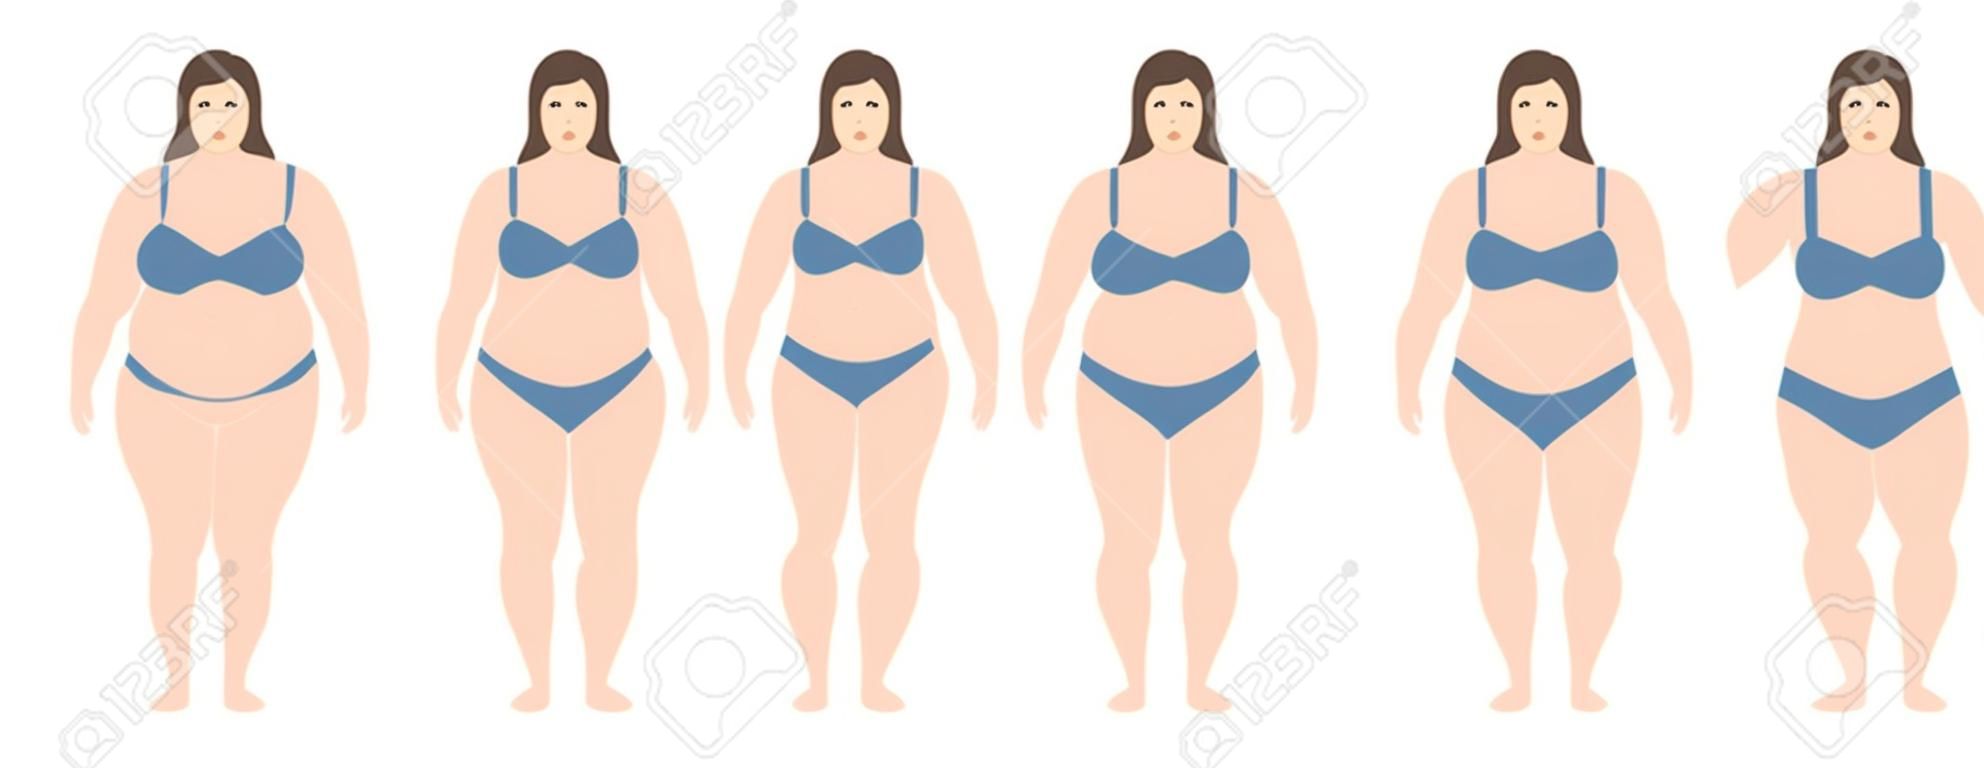 Een Vector illustratie van vrouwen met een ander gewicht van anorexia tot extreem zwaarlijvig. Body mass index, gewichtsverlies concept.